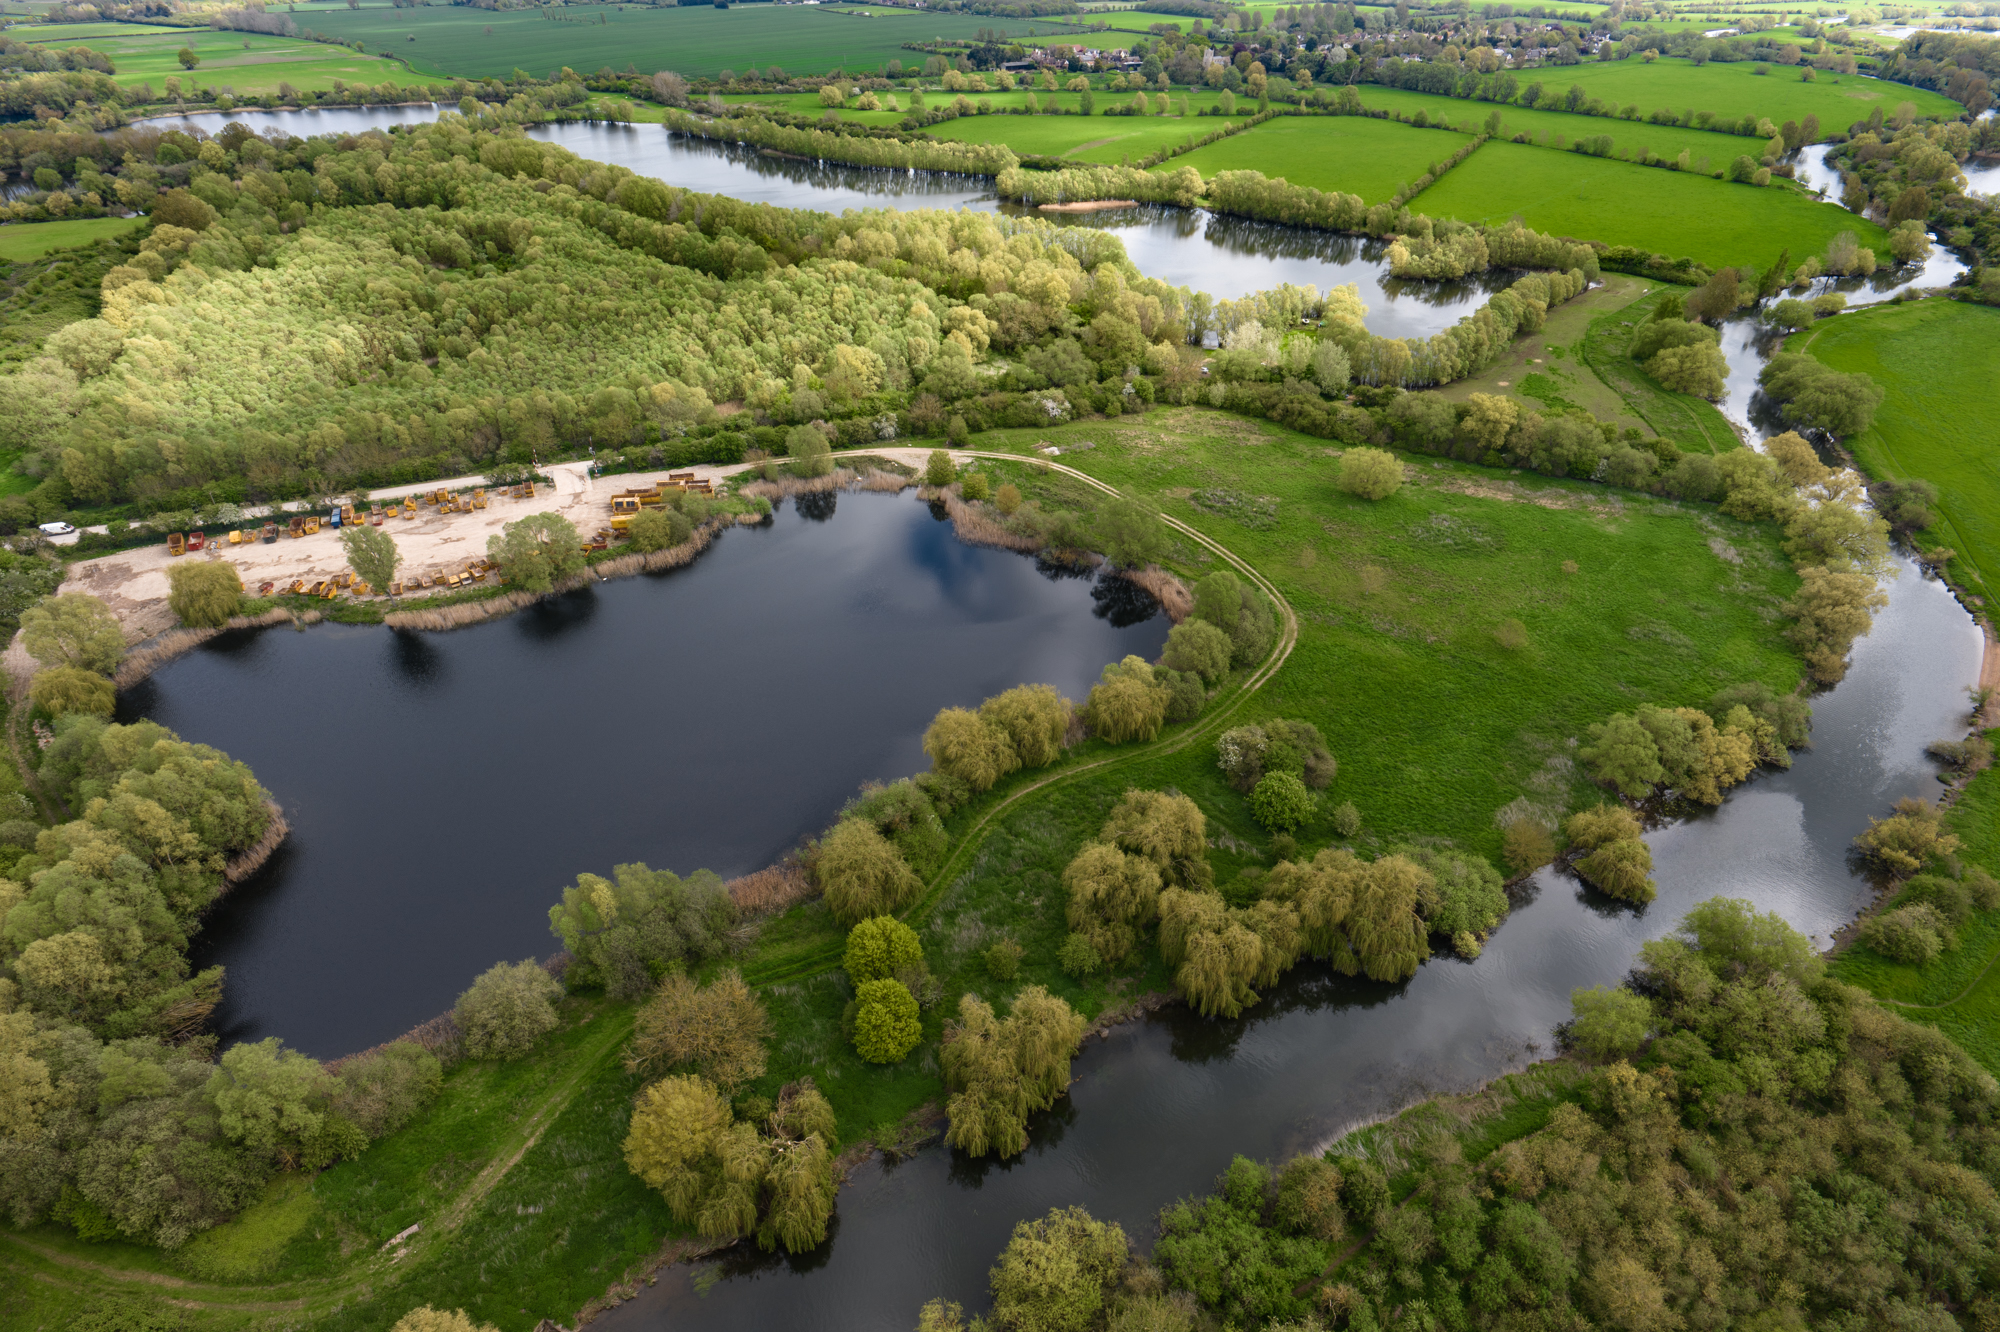 DJI Inspire 3 aerial image of river